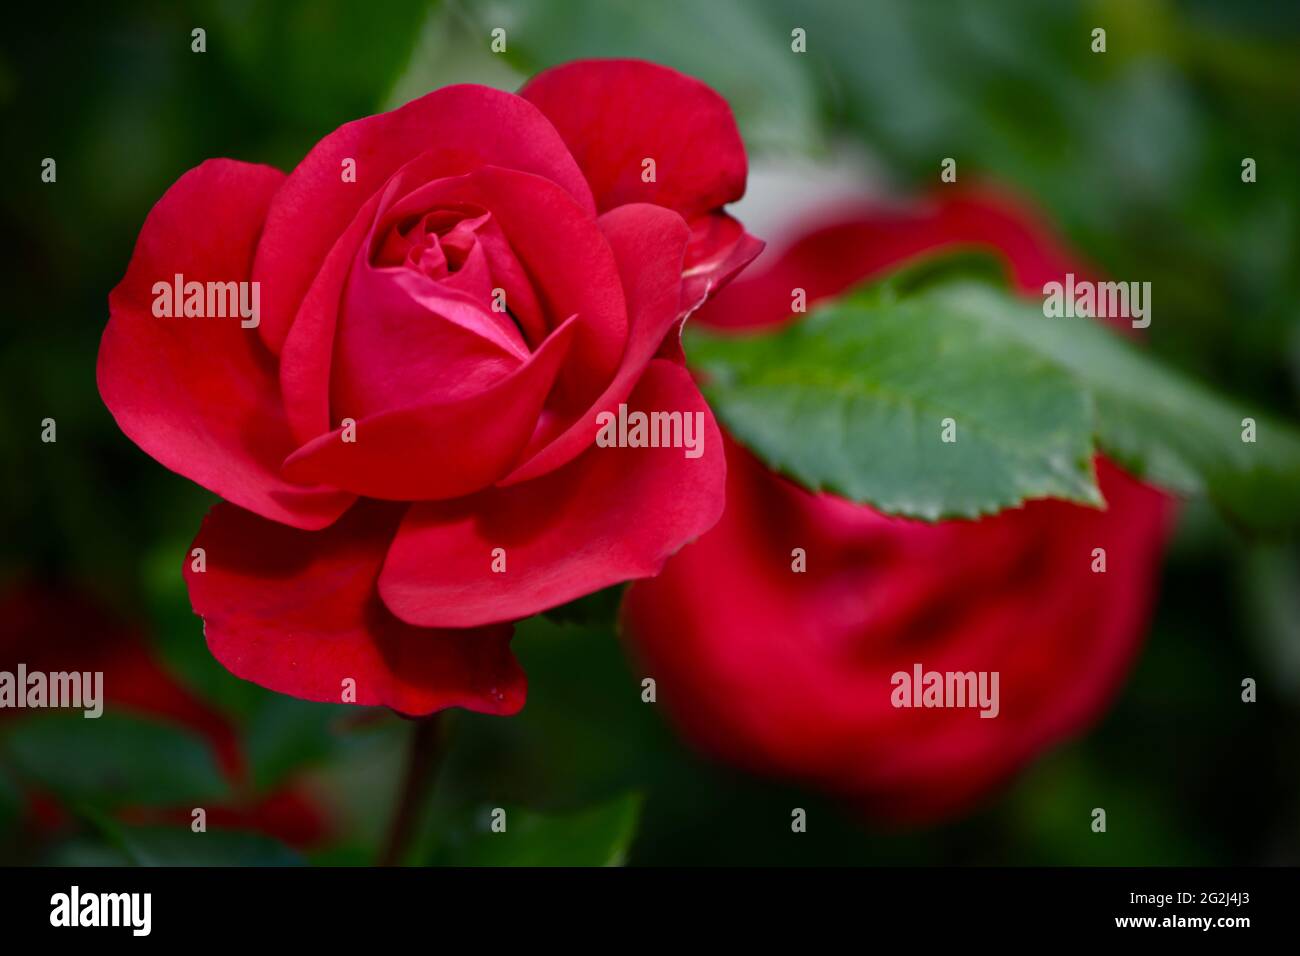 Heilpflanze Rose - rosa - mit herrlicher roter Rosenblüte als Zeichen der Liebe und Freundschaft - Grundstock der europäischen Gartenkultur, Heilpflan Foto Stock